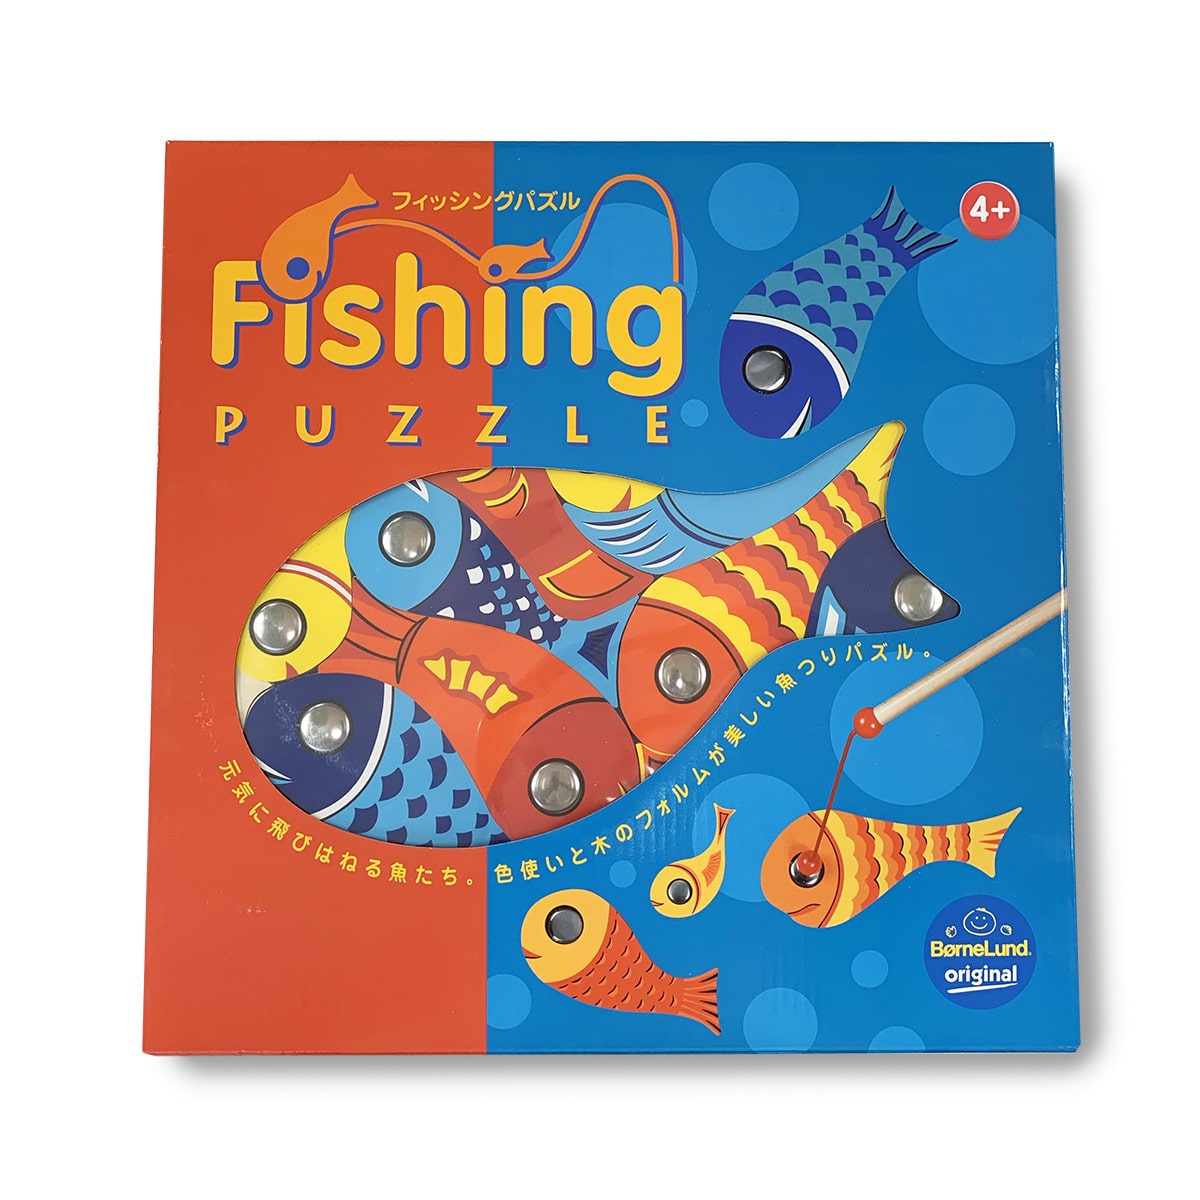 魚つりパズル: ボーネルンド オンラインショップ。世界中の知育玩具 ...